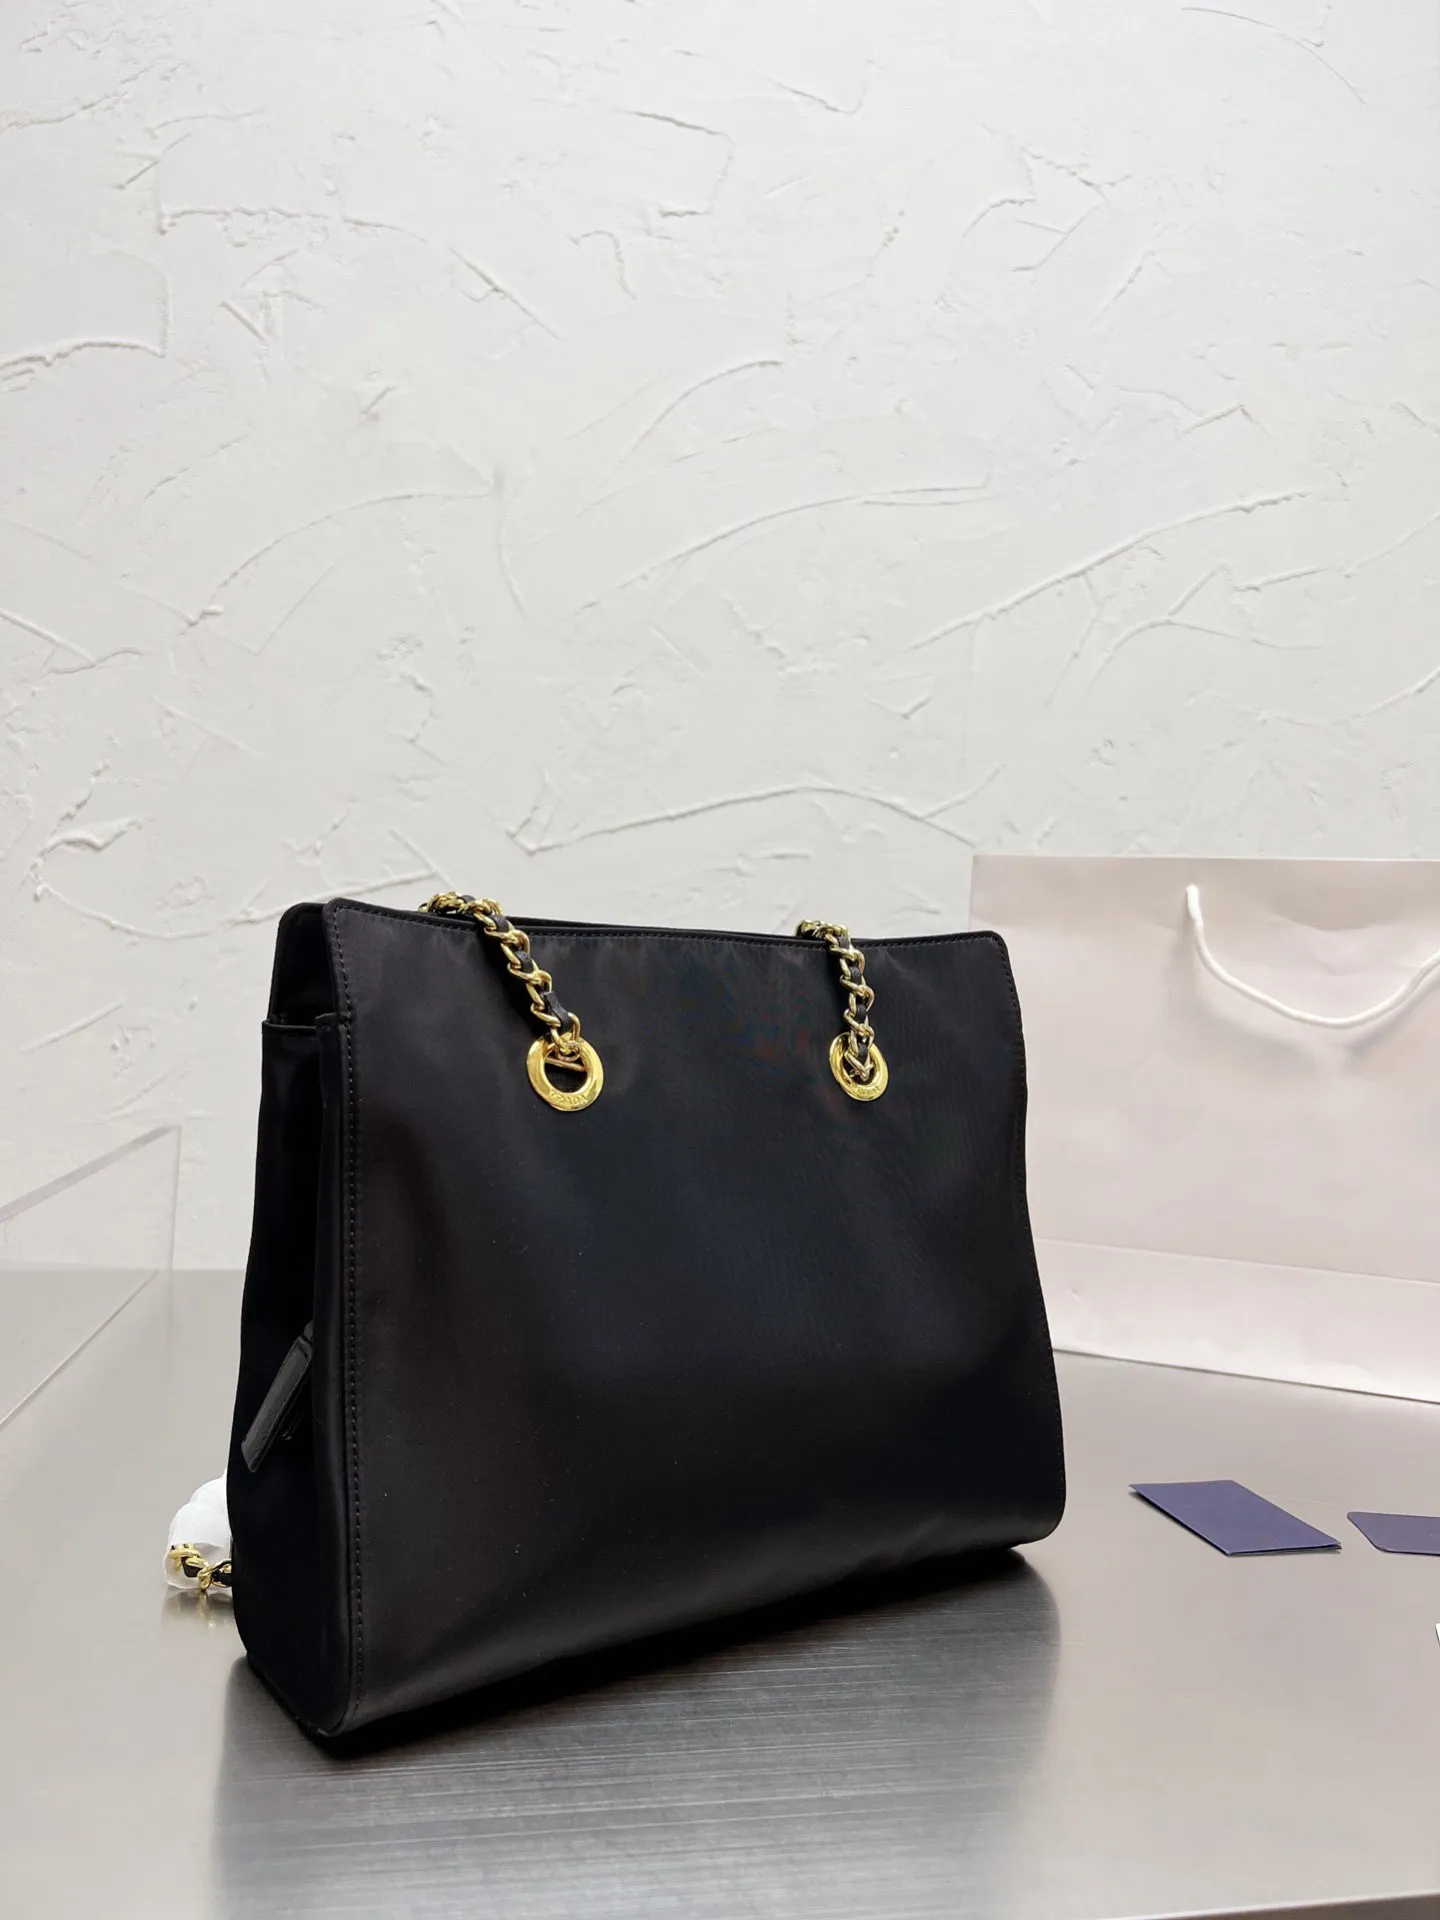 Nova Moda Exclusiva Durável Gift Bags grandes bolsas de couro para mulheres ombro sacolas de satchel com corrente